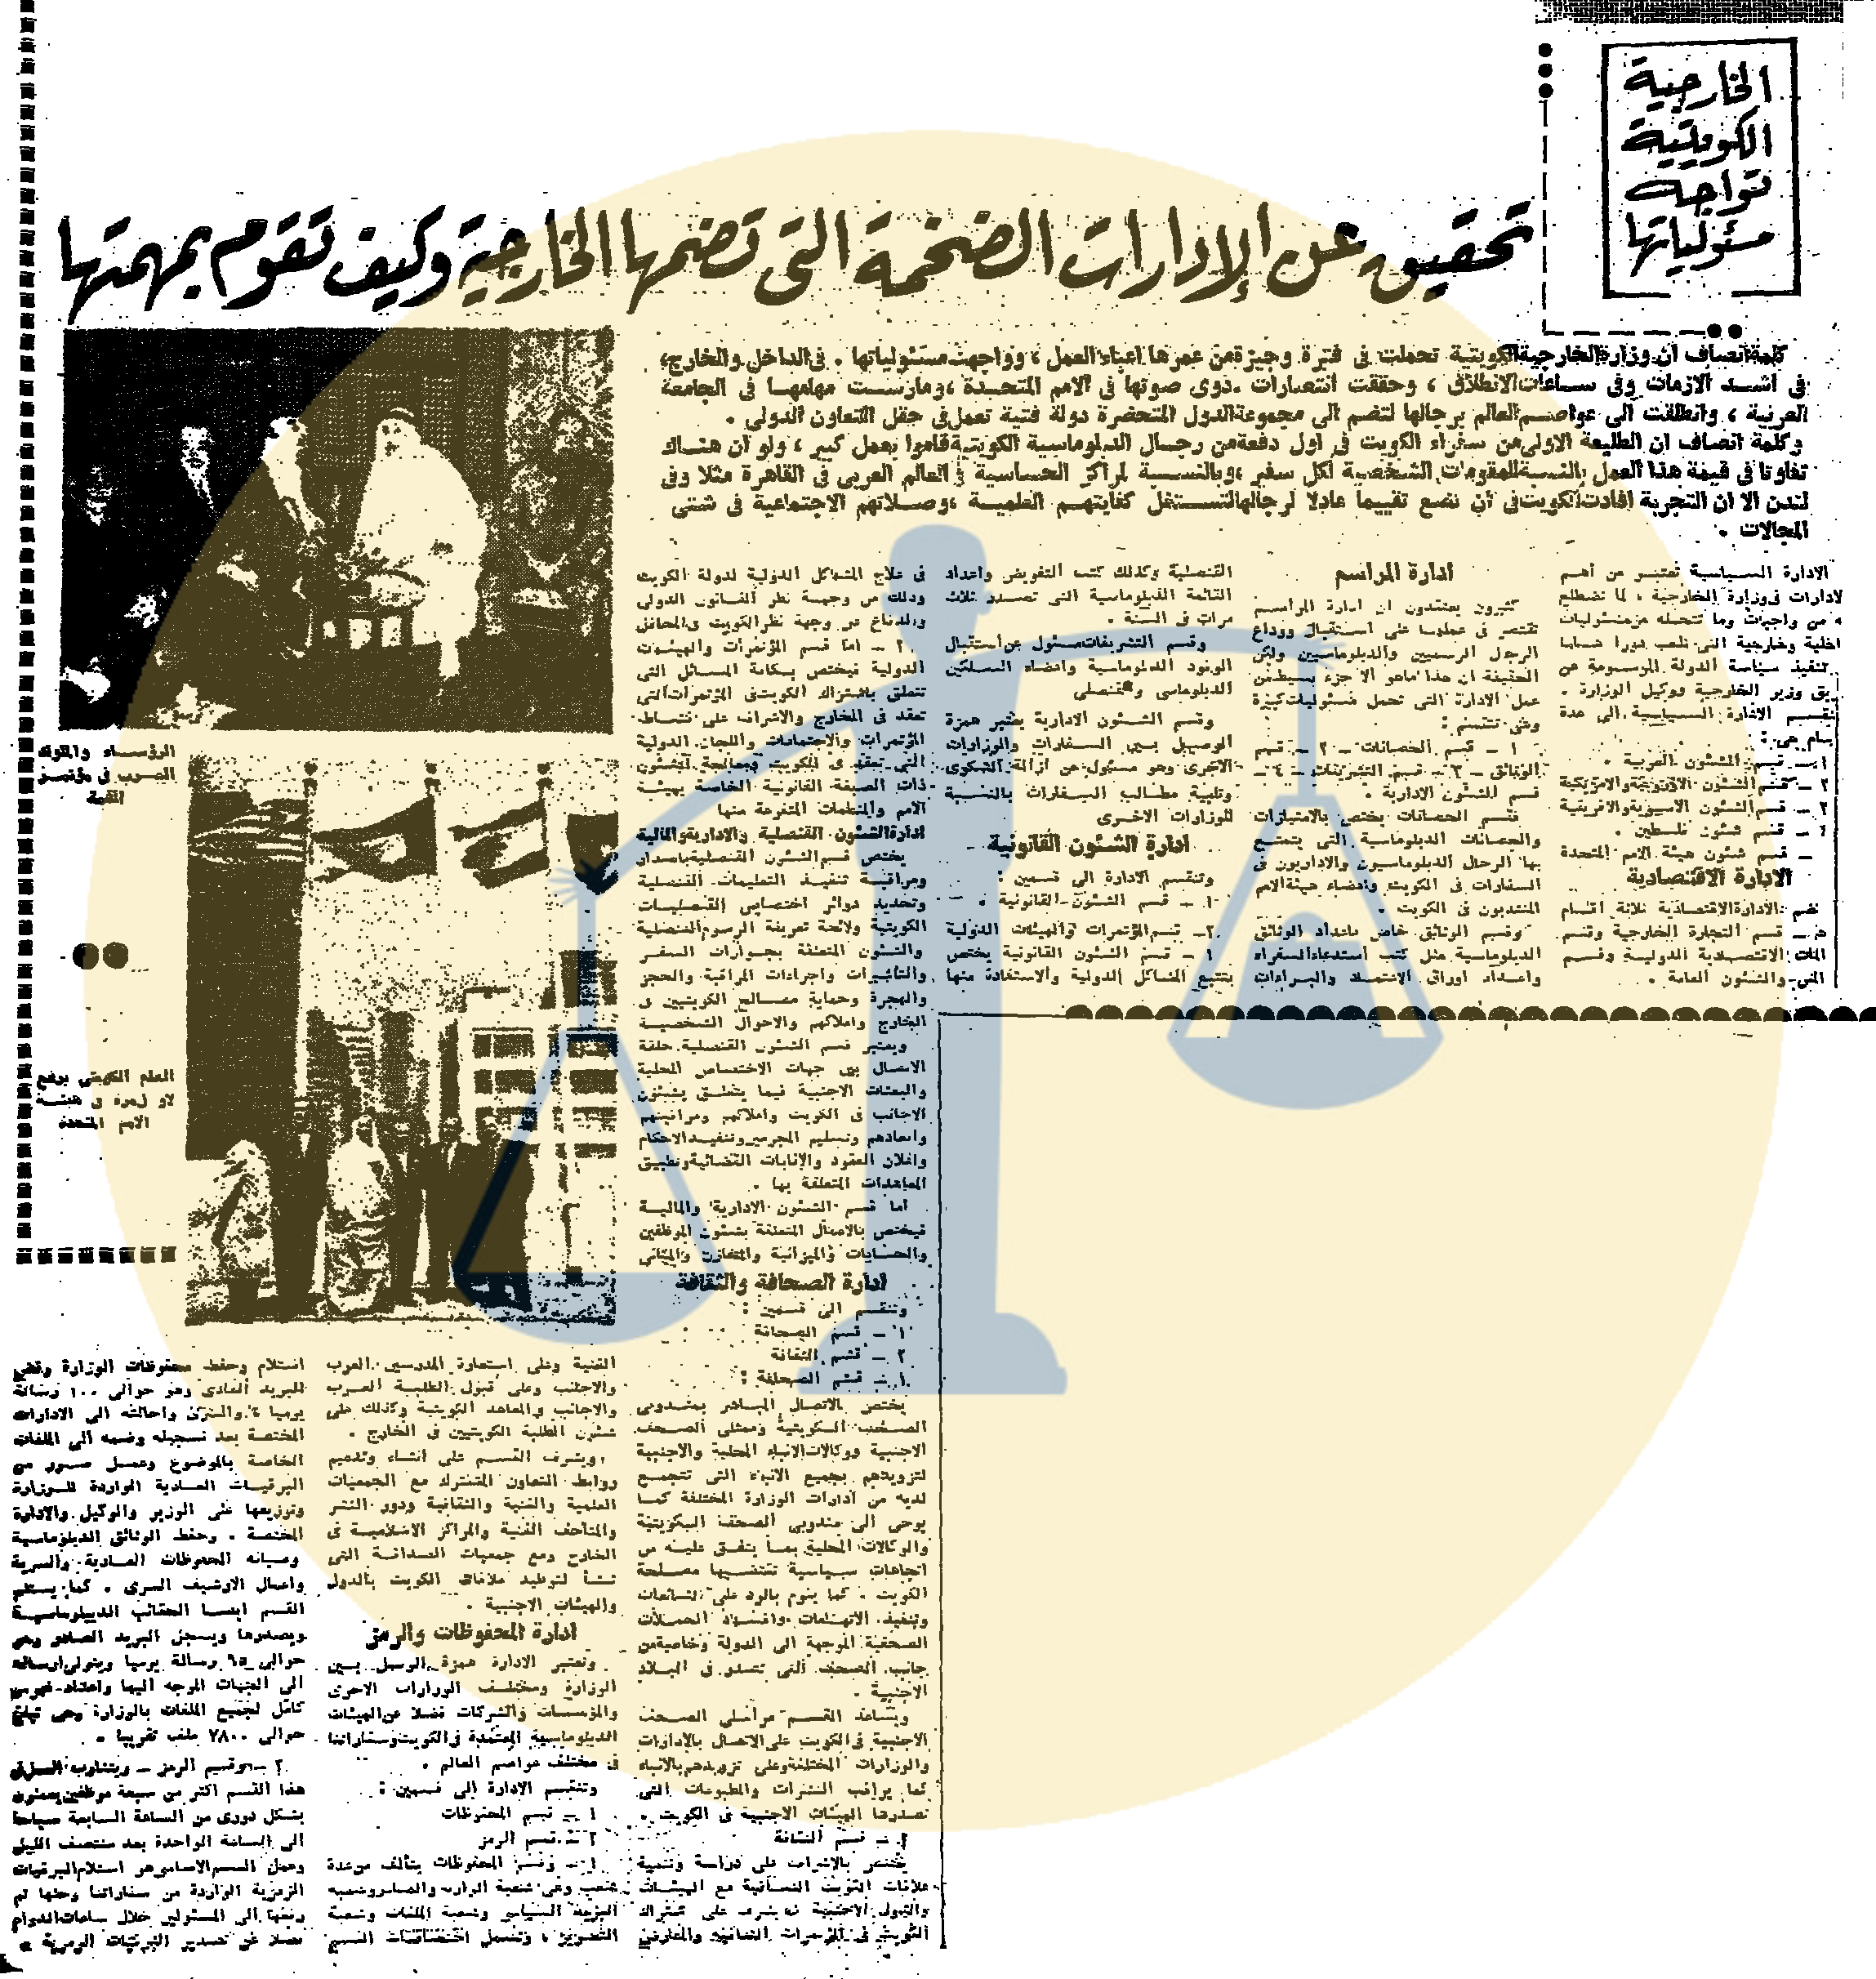 تغطية جريدة الأهرام لتقدم وزارة الخارجية الكويتية في ظل تولي الشيخ صباح لها